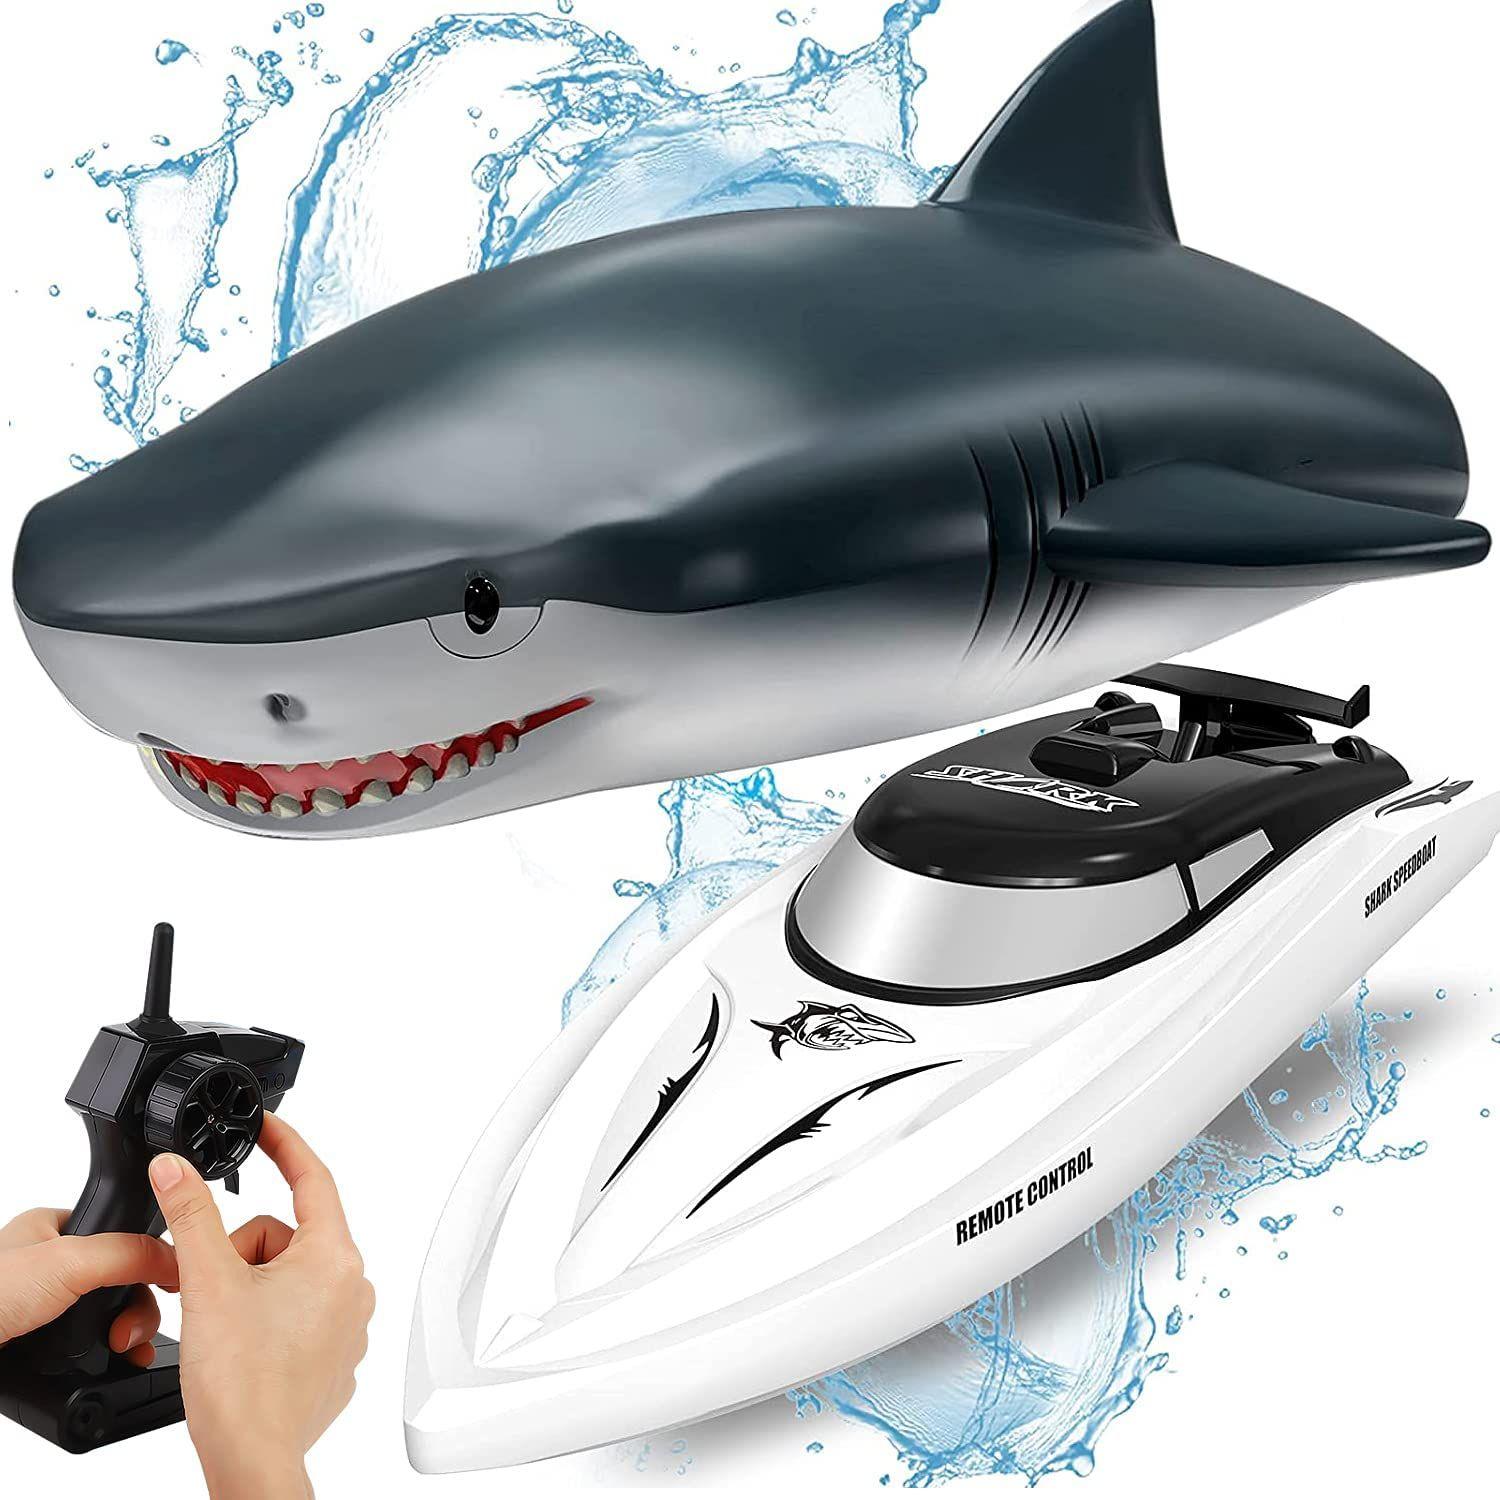 Télécommande Shark Toys pour garçons Jouets de requin pour enfants